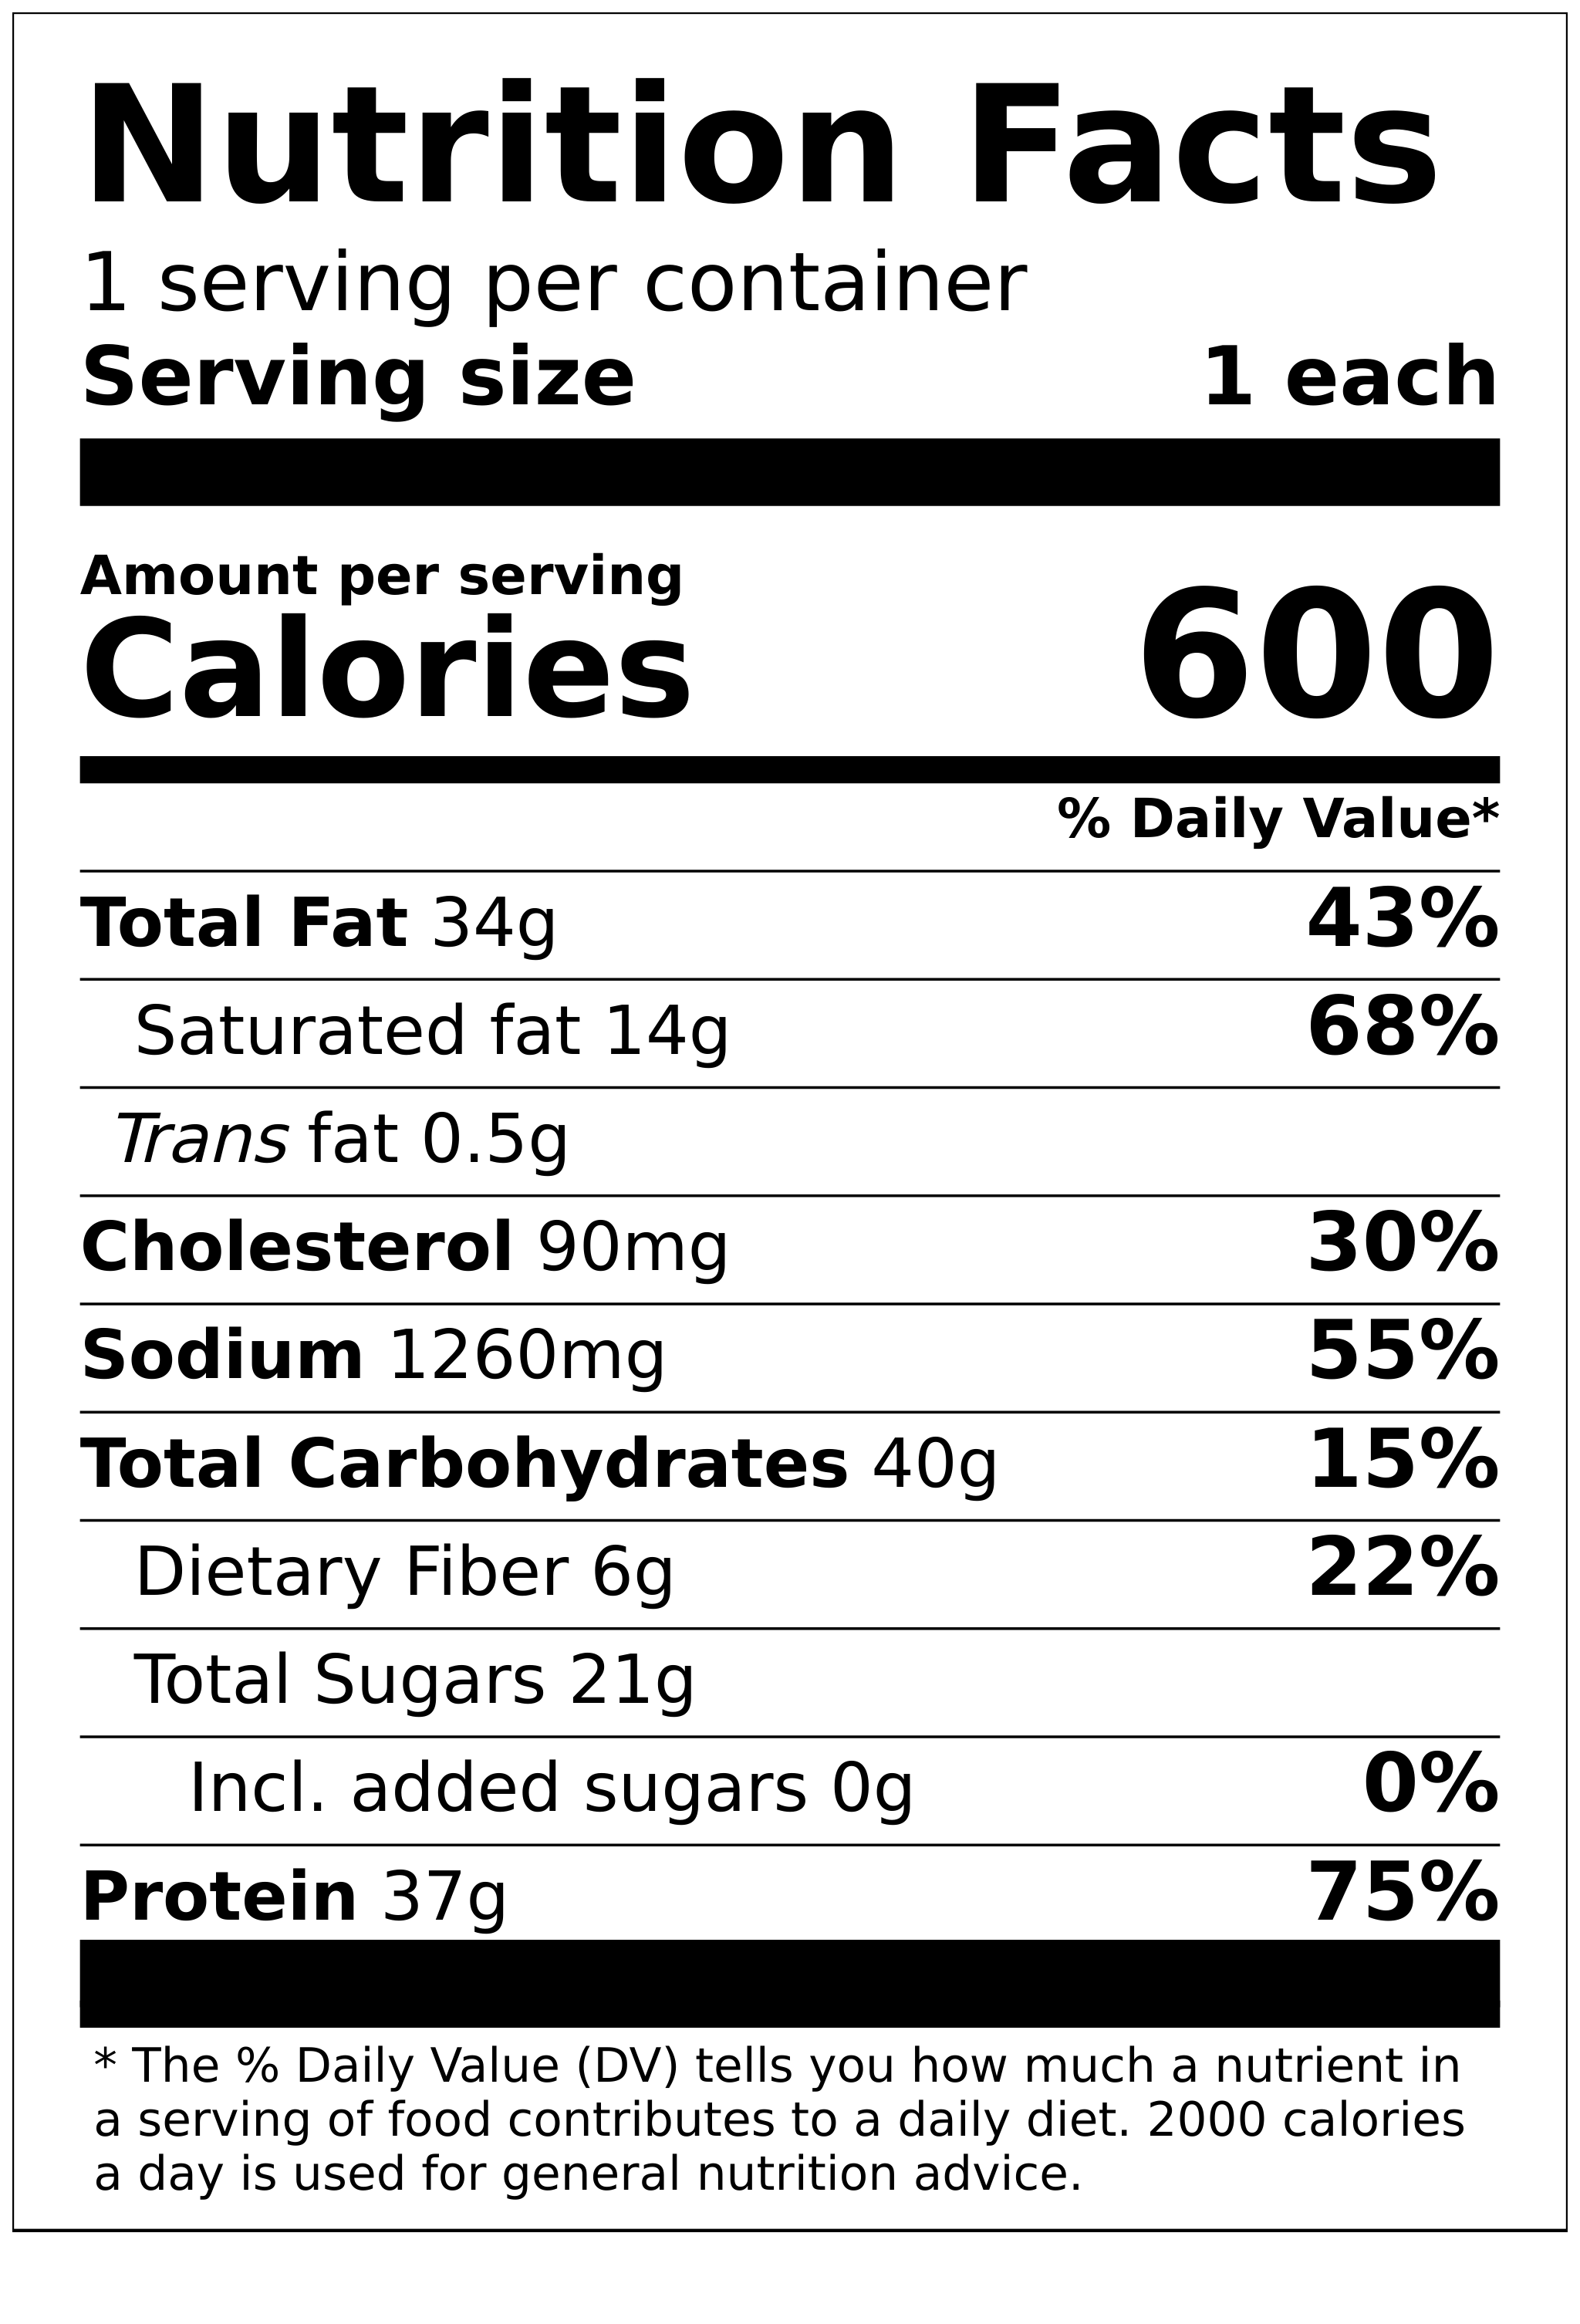 salt & pepper Nutrition Facts and Calories, Description